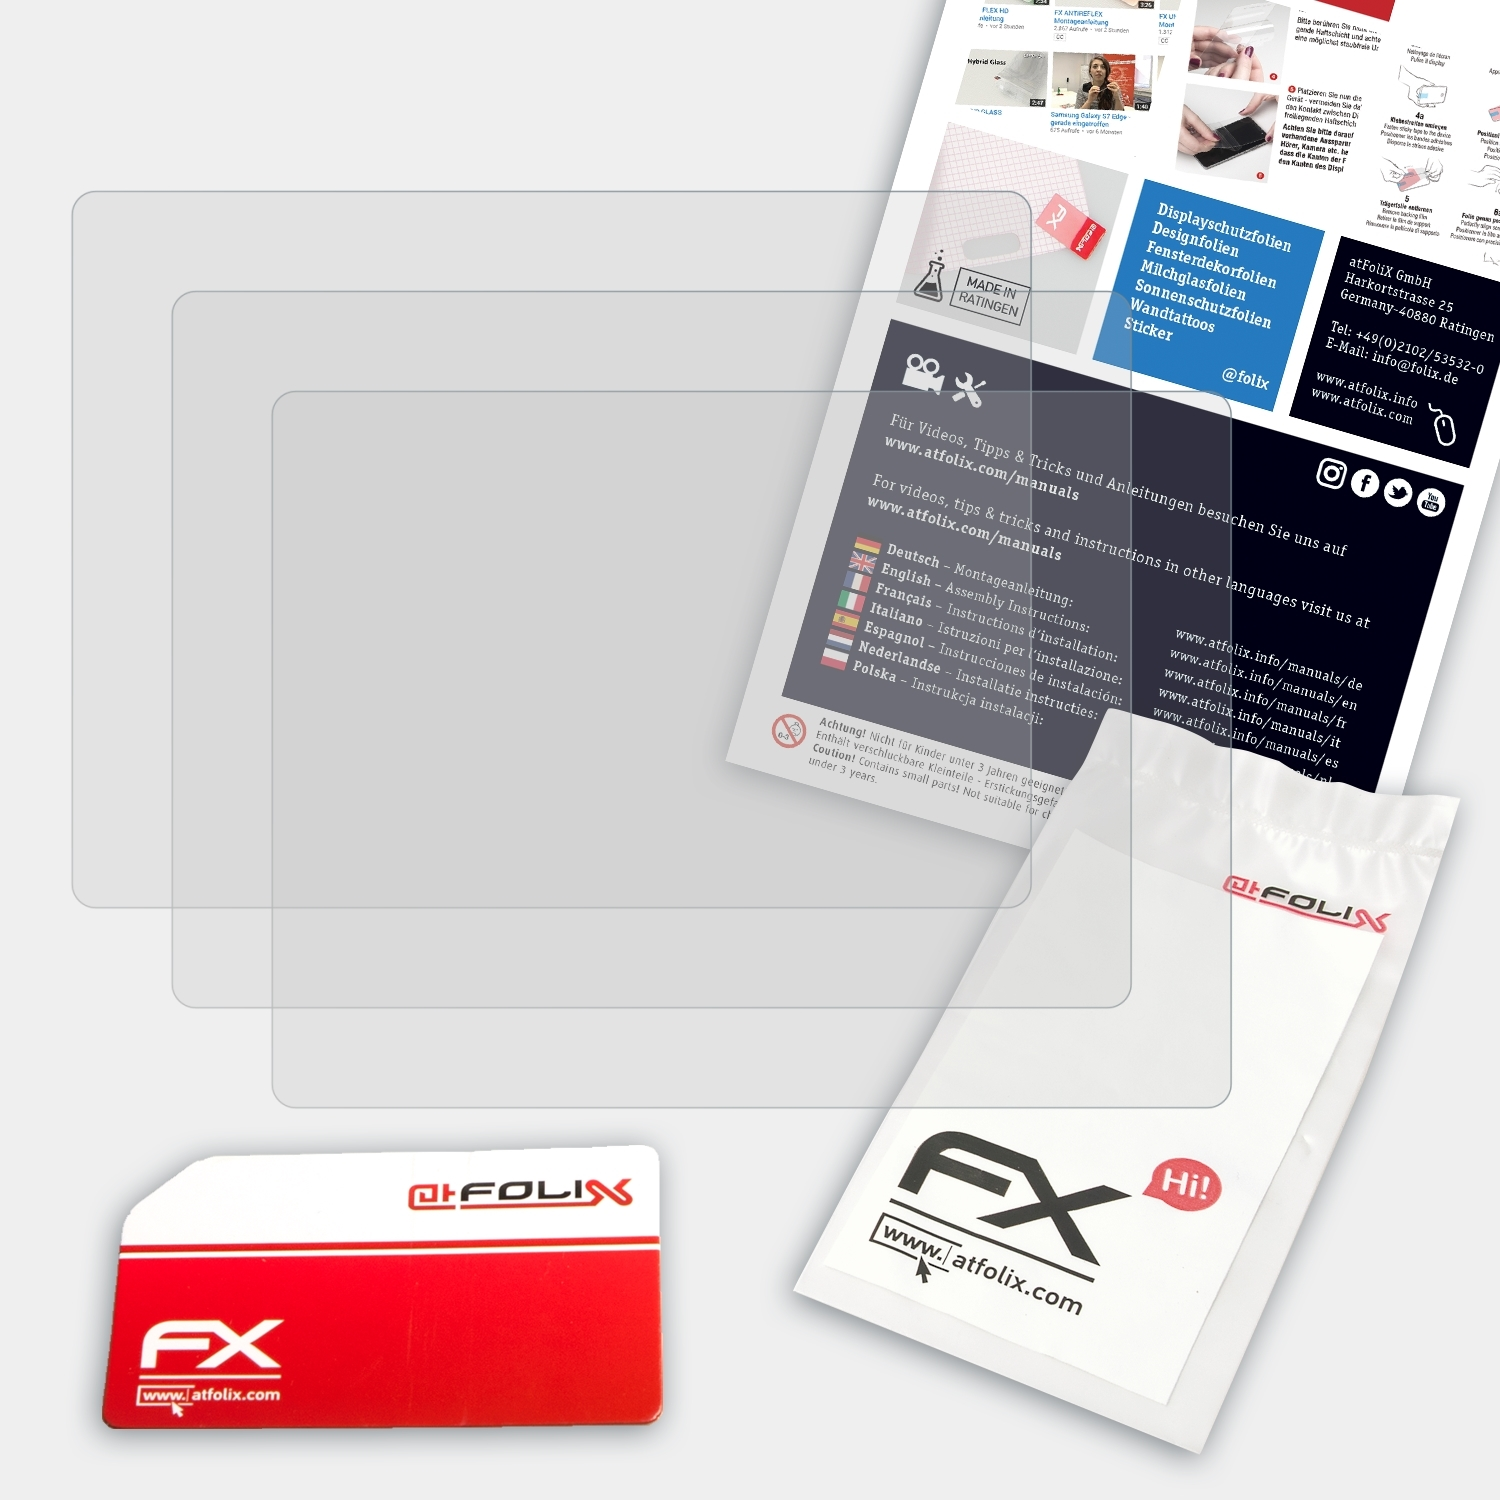 FX-Antireflex Panasonic 3x Lumix Displayschutz(für DMC-TZ6) ATFOLIX